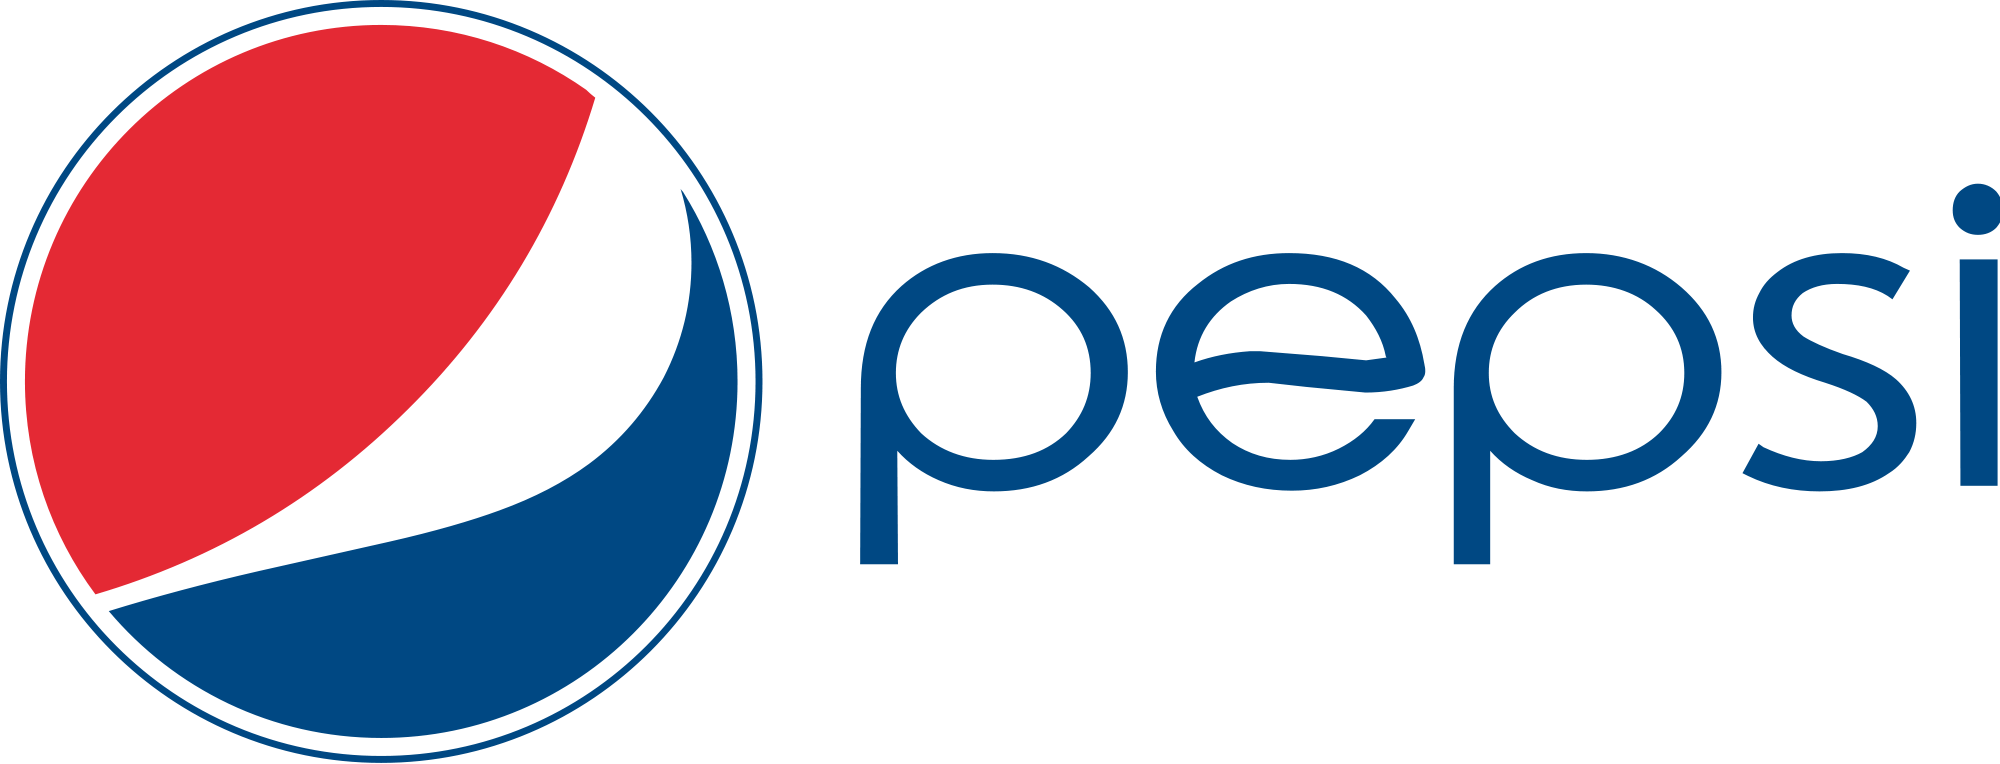 Pepsi logo transparent.